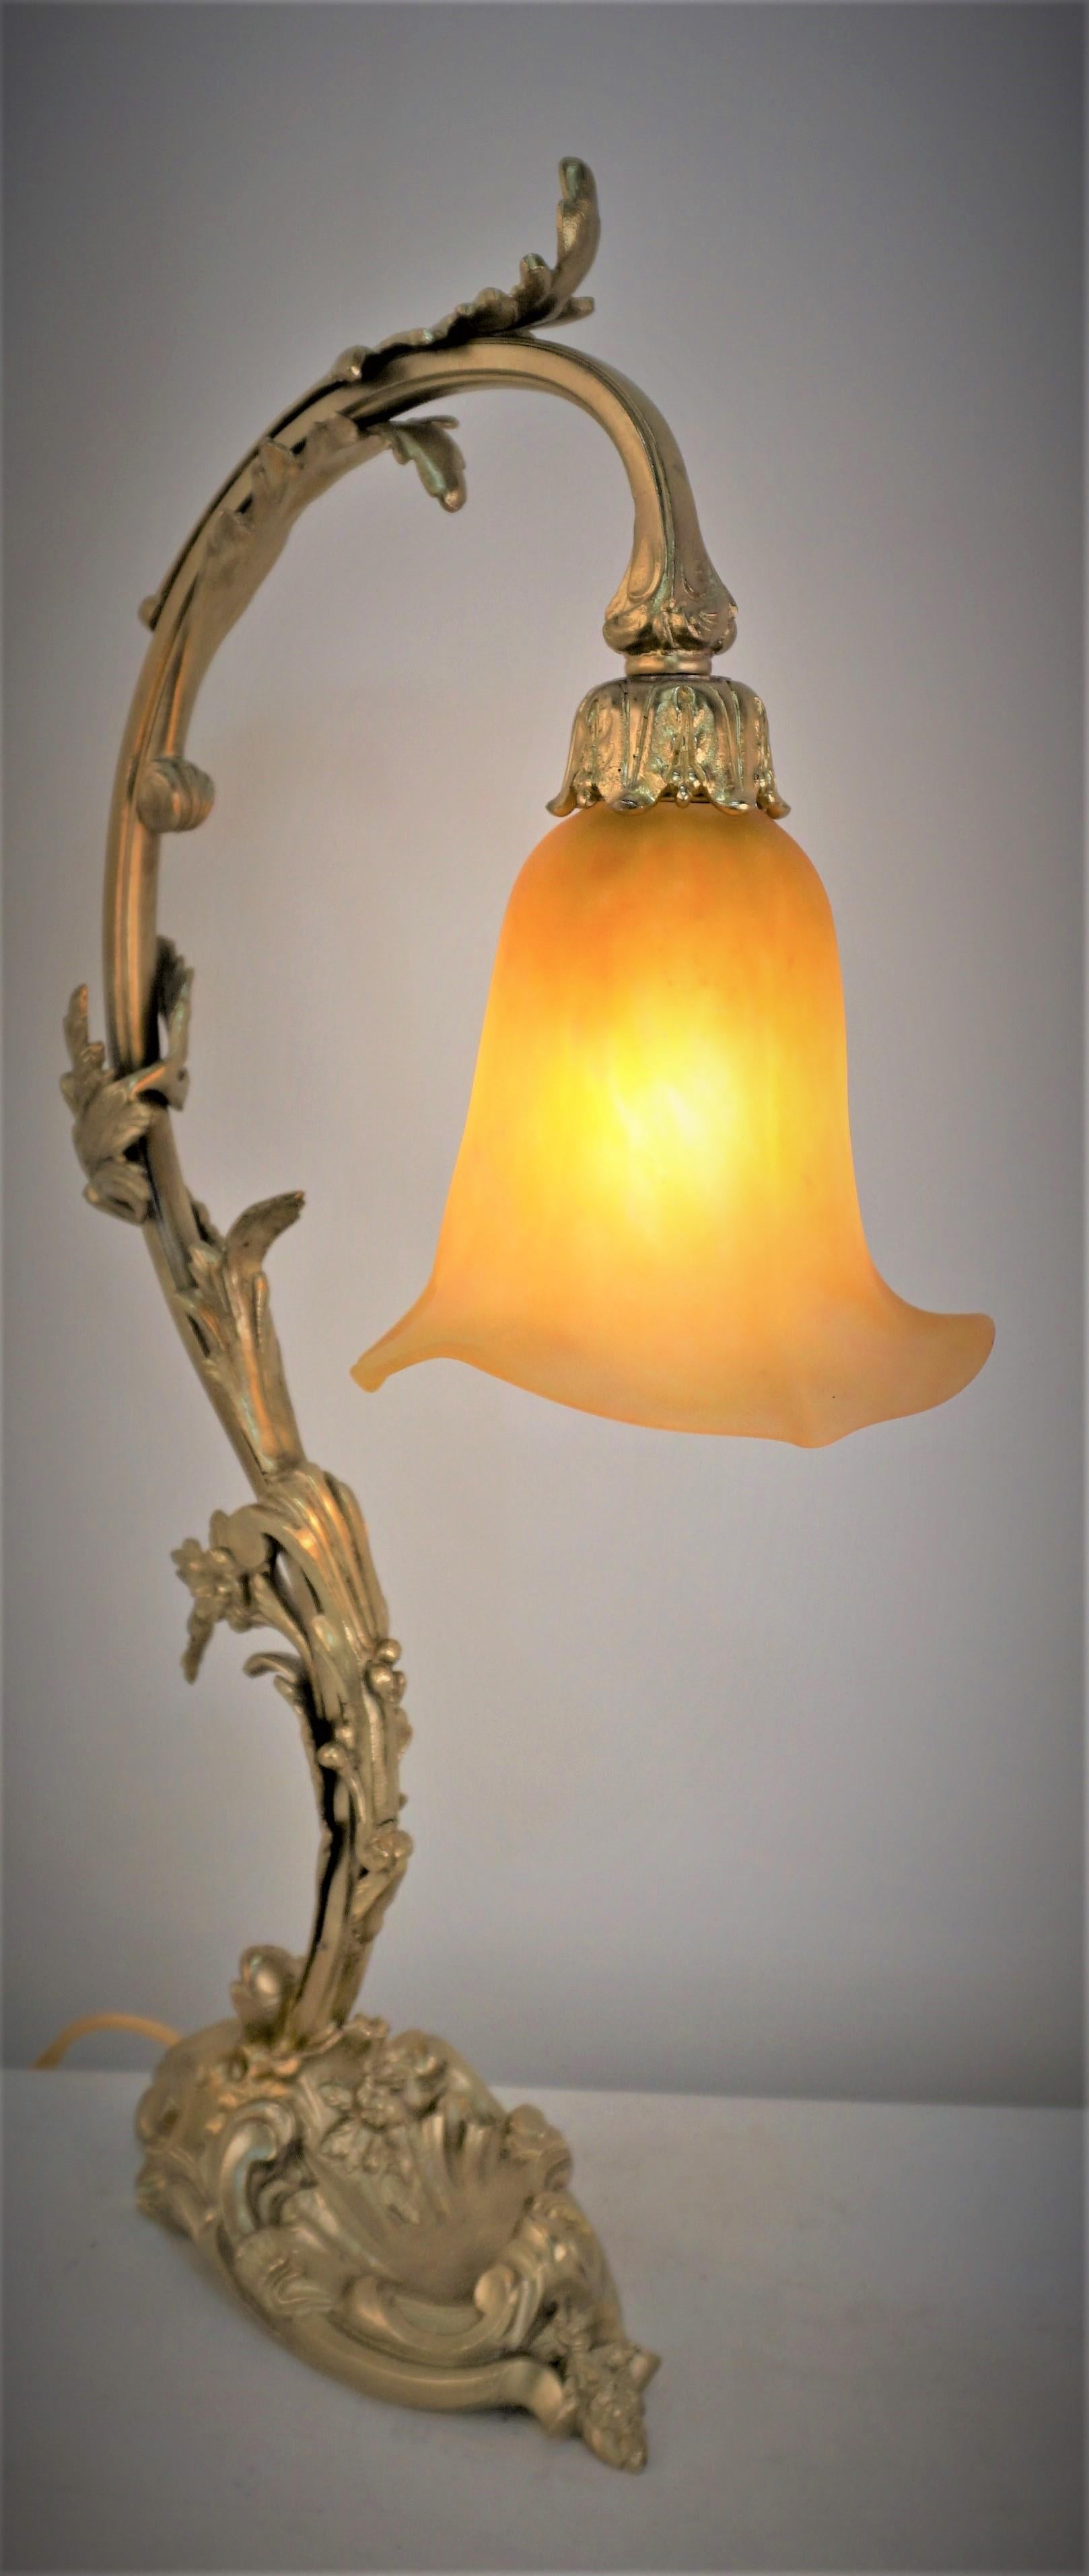 Geblasenes Kunstglas von Daum, fantastische Jugendstil-Tischlampe mit Bronzefuß.
Professionell neu verkabelt.